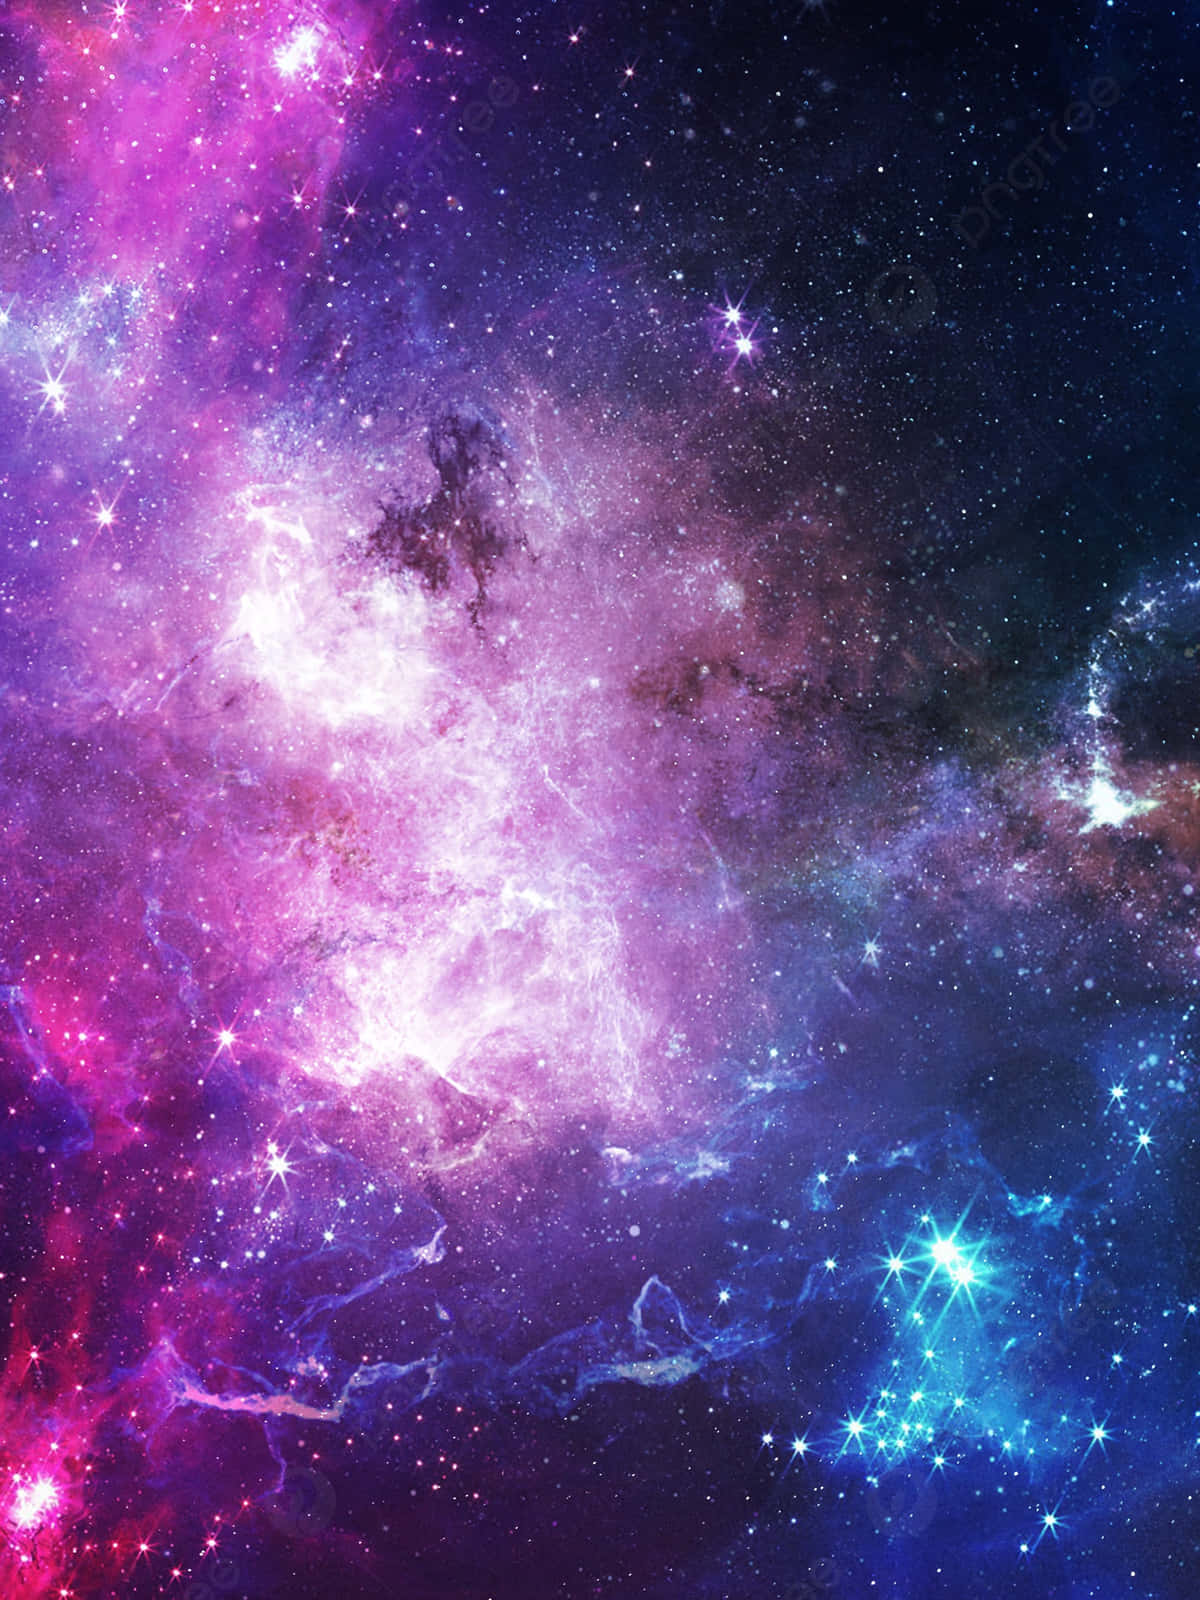 Surreal Cosmic Voyage - Galaxy Artwork Wallpaper